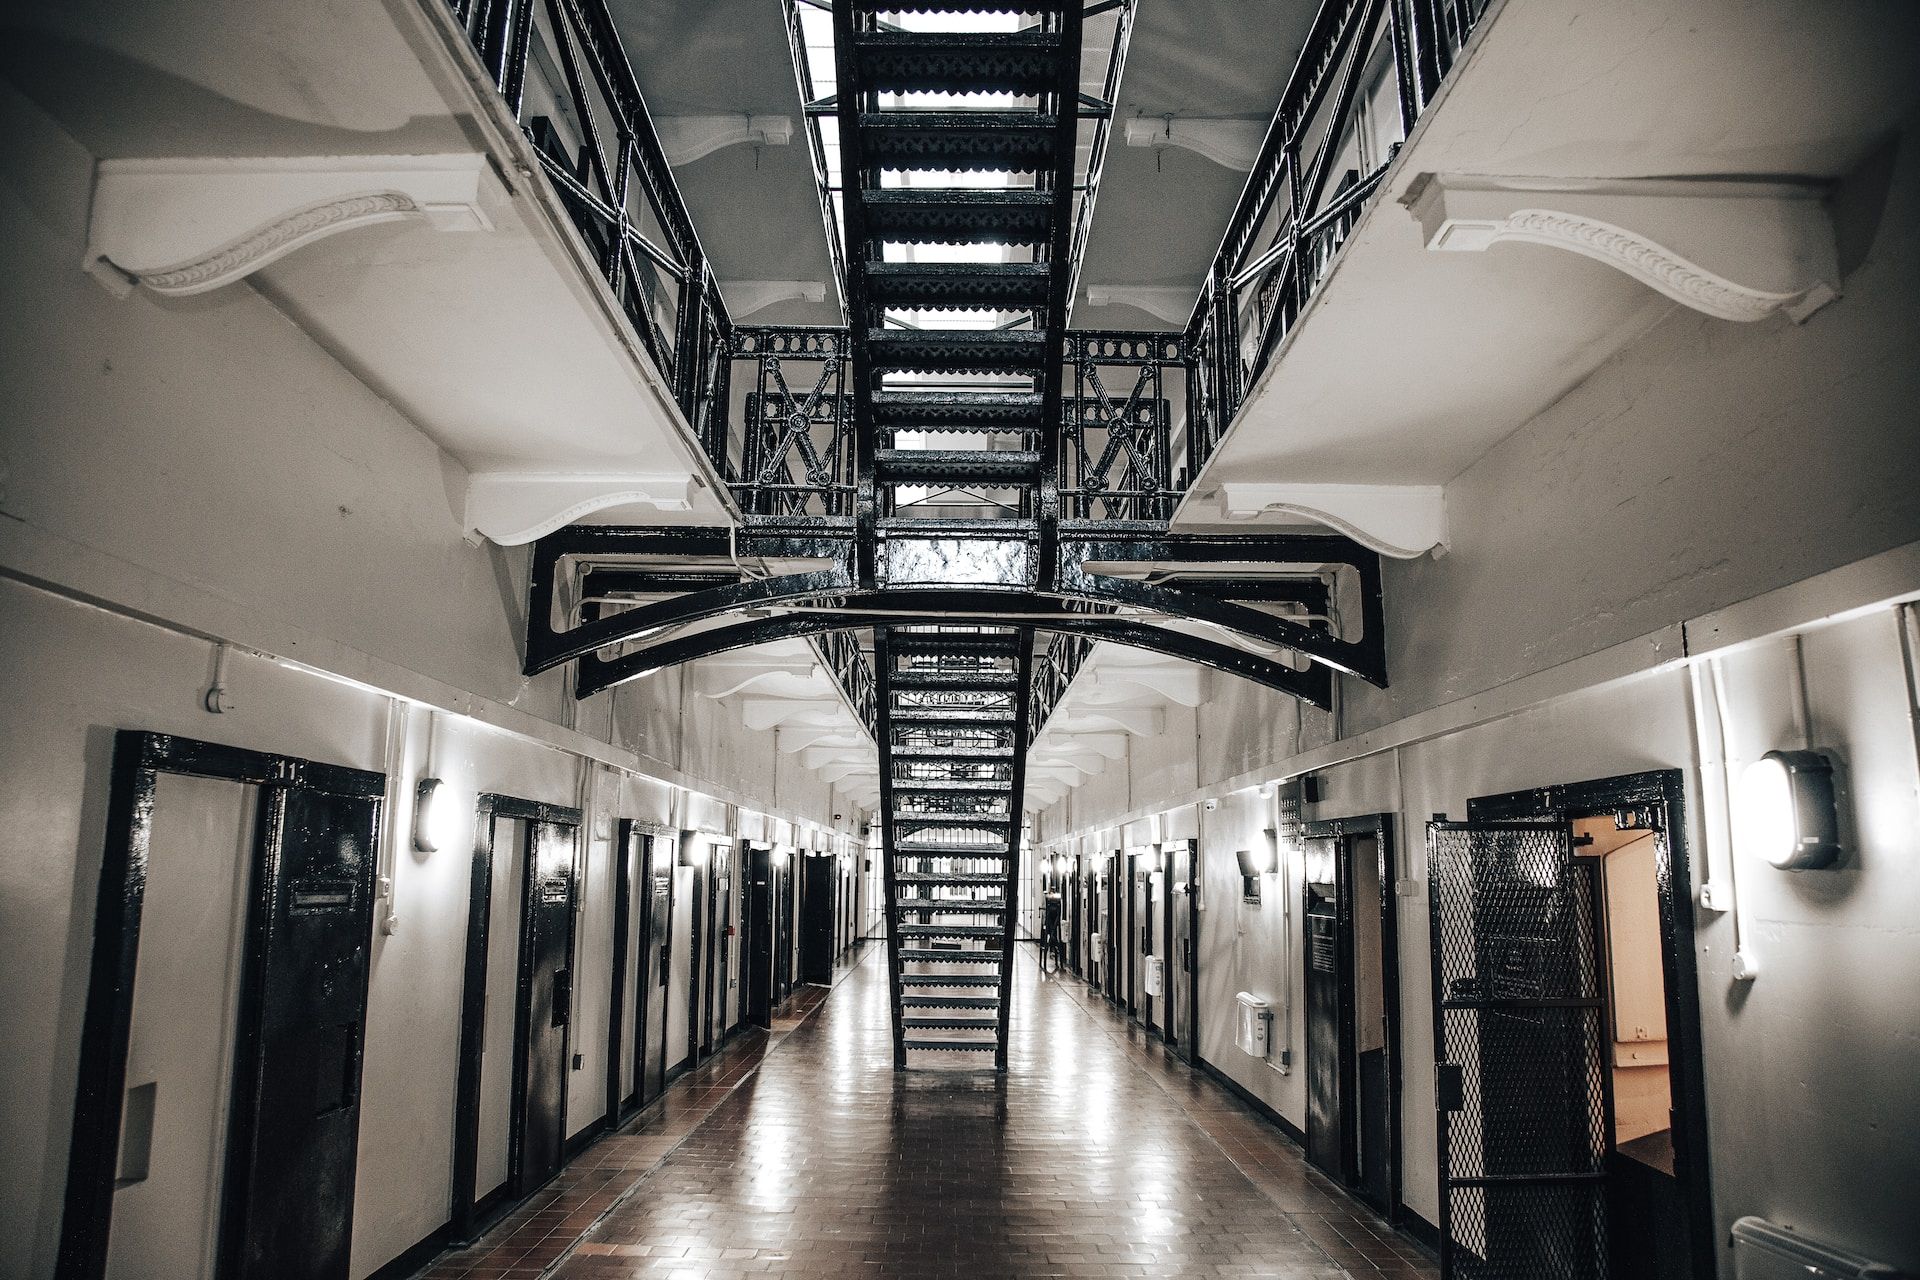 vue de l'intérieur d'une prison, avec des couloirs vides - Photo de Tom Blackout sur https://unsplash.com/fr/photos/LJp0F9Icjlc